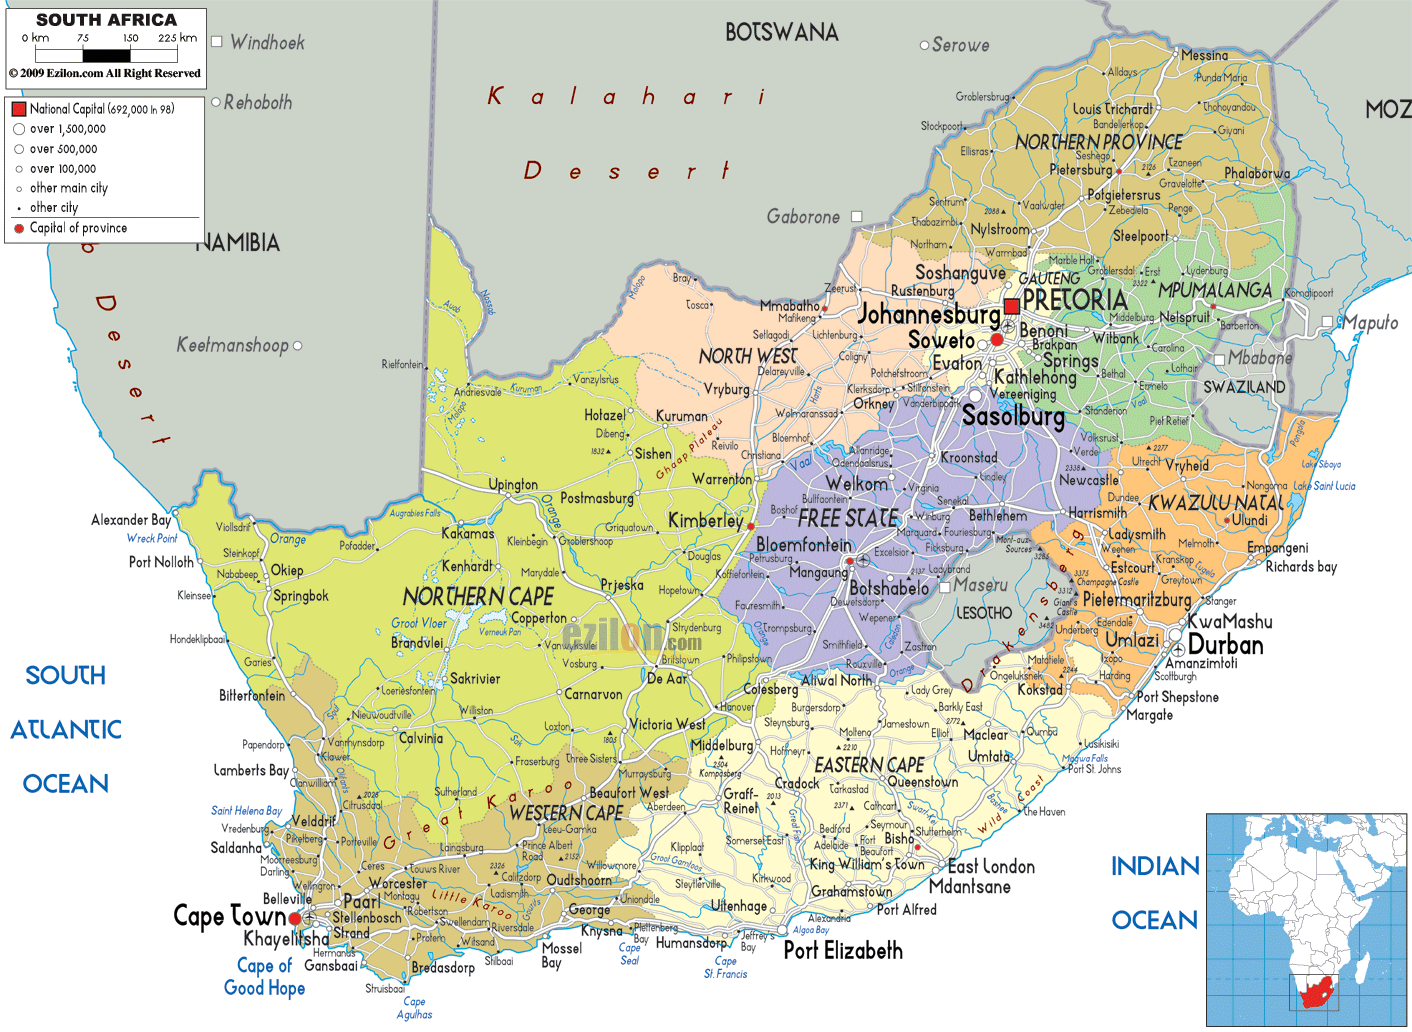 http://www.ezilon.com/maps/images/africa/political-map-of-south-afri.gif